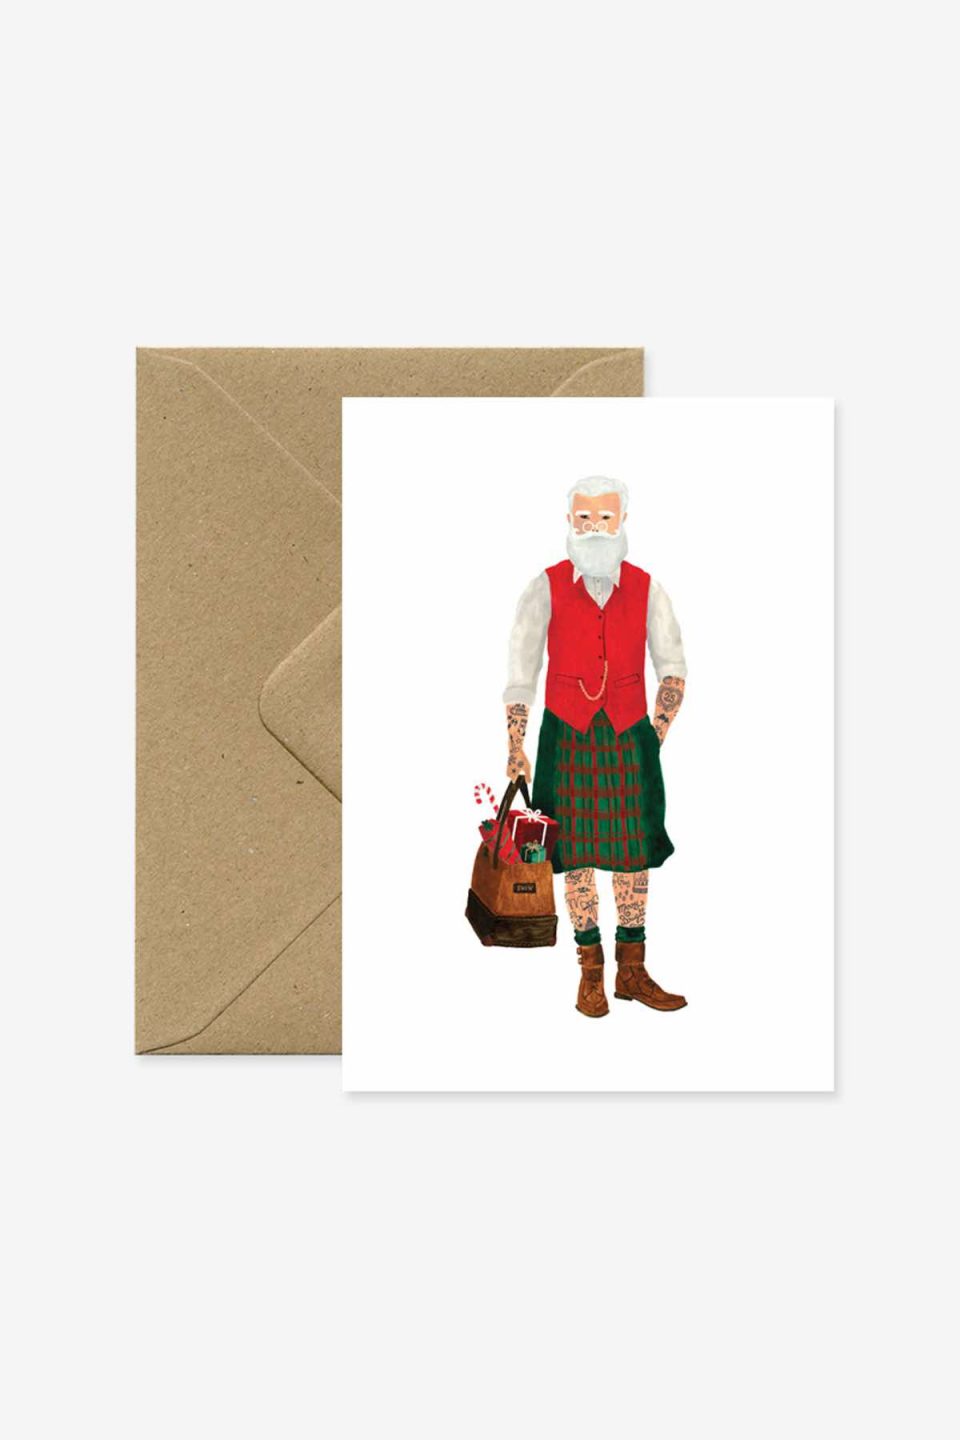 Čestitka s motivom djeda božićnjaka, ali u "fashion" izdanju sa kiltom, crvenom strukiranom vesticom, tetoviranim nogama i torbicom, iza se vidi smeđa kuverta